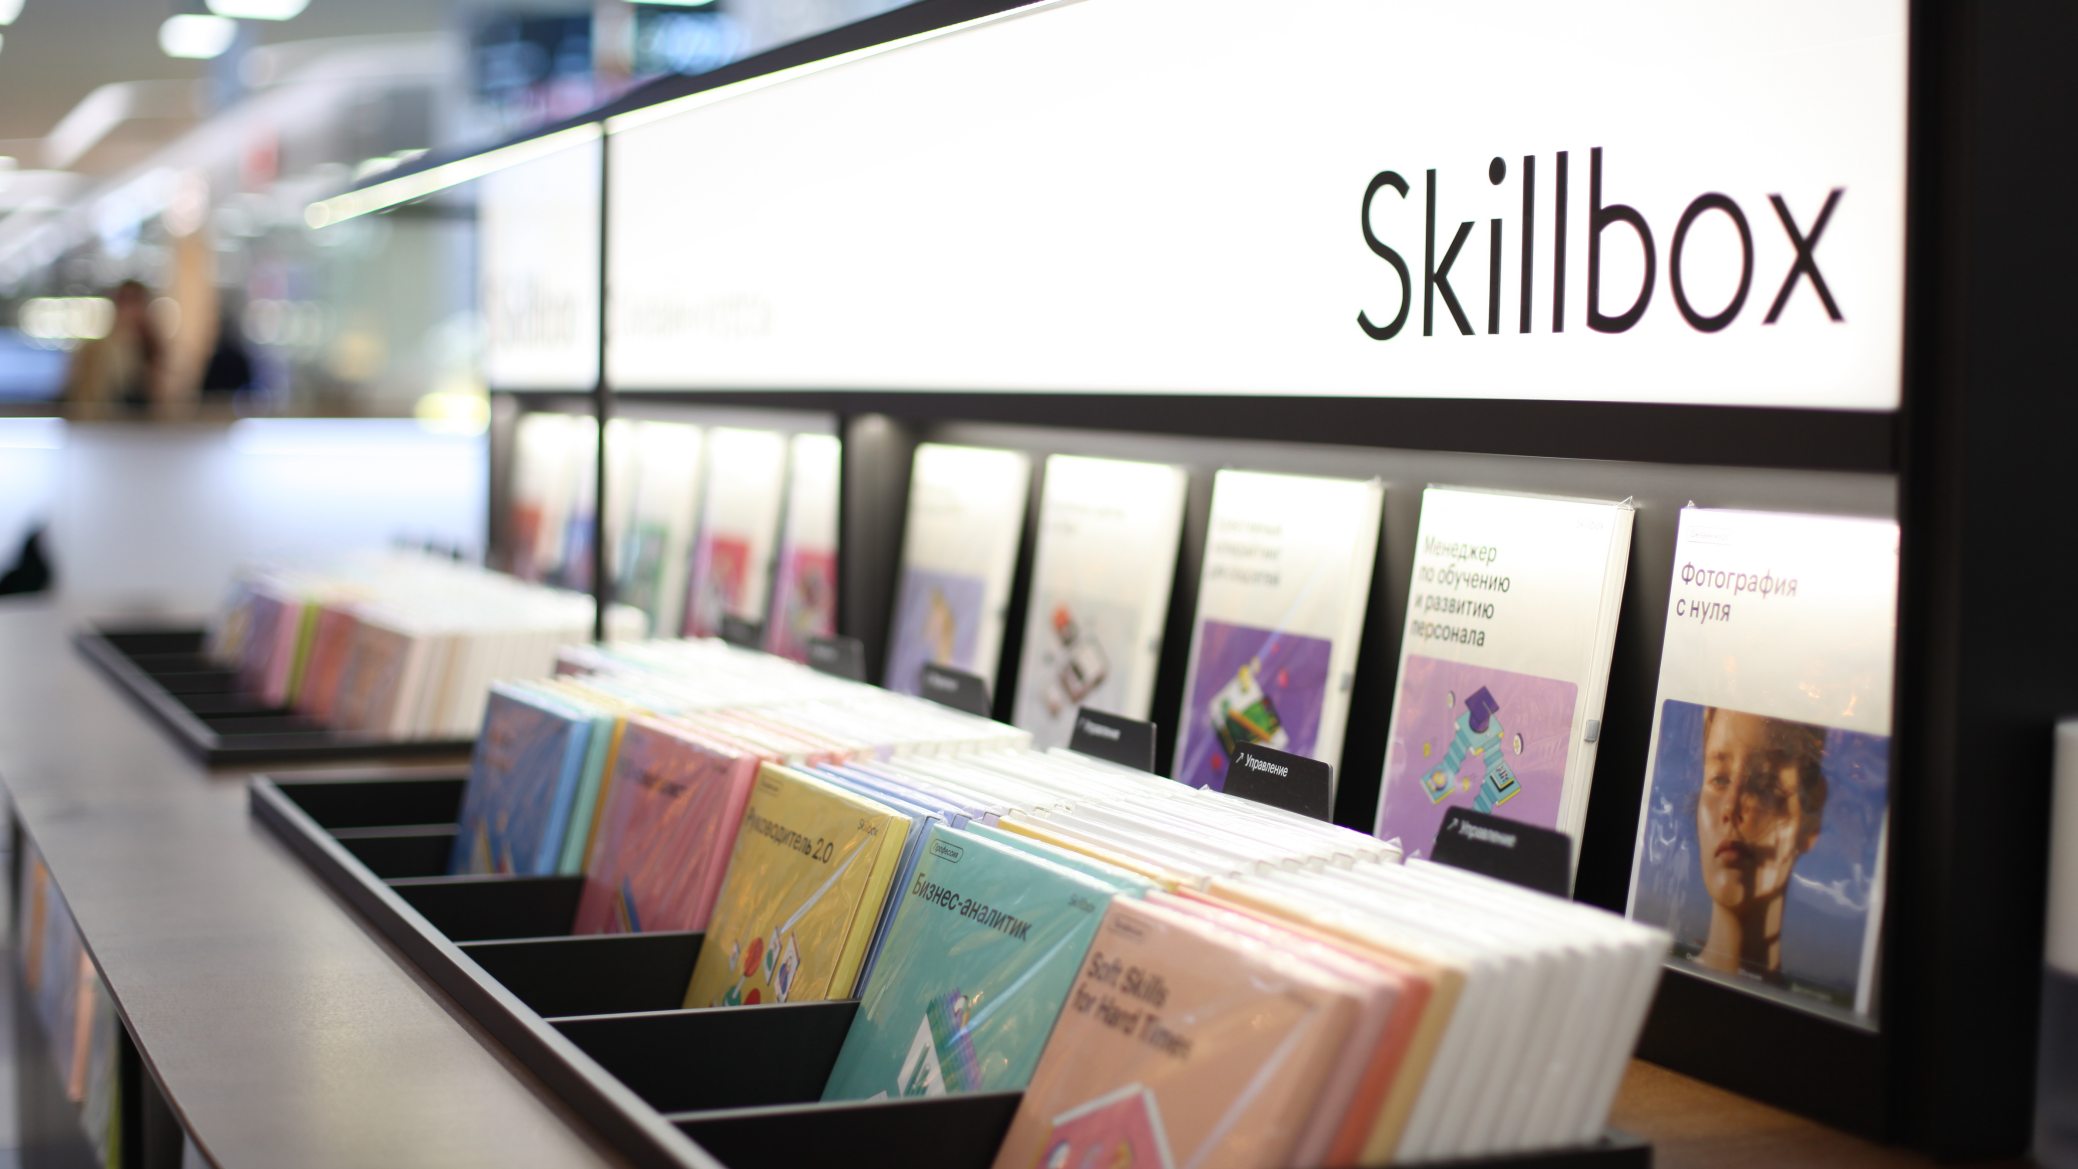 Skillbox открывает офлайн-точки продаж курсов в торговых центрах